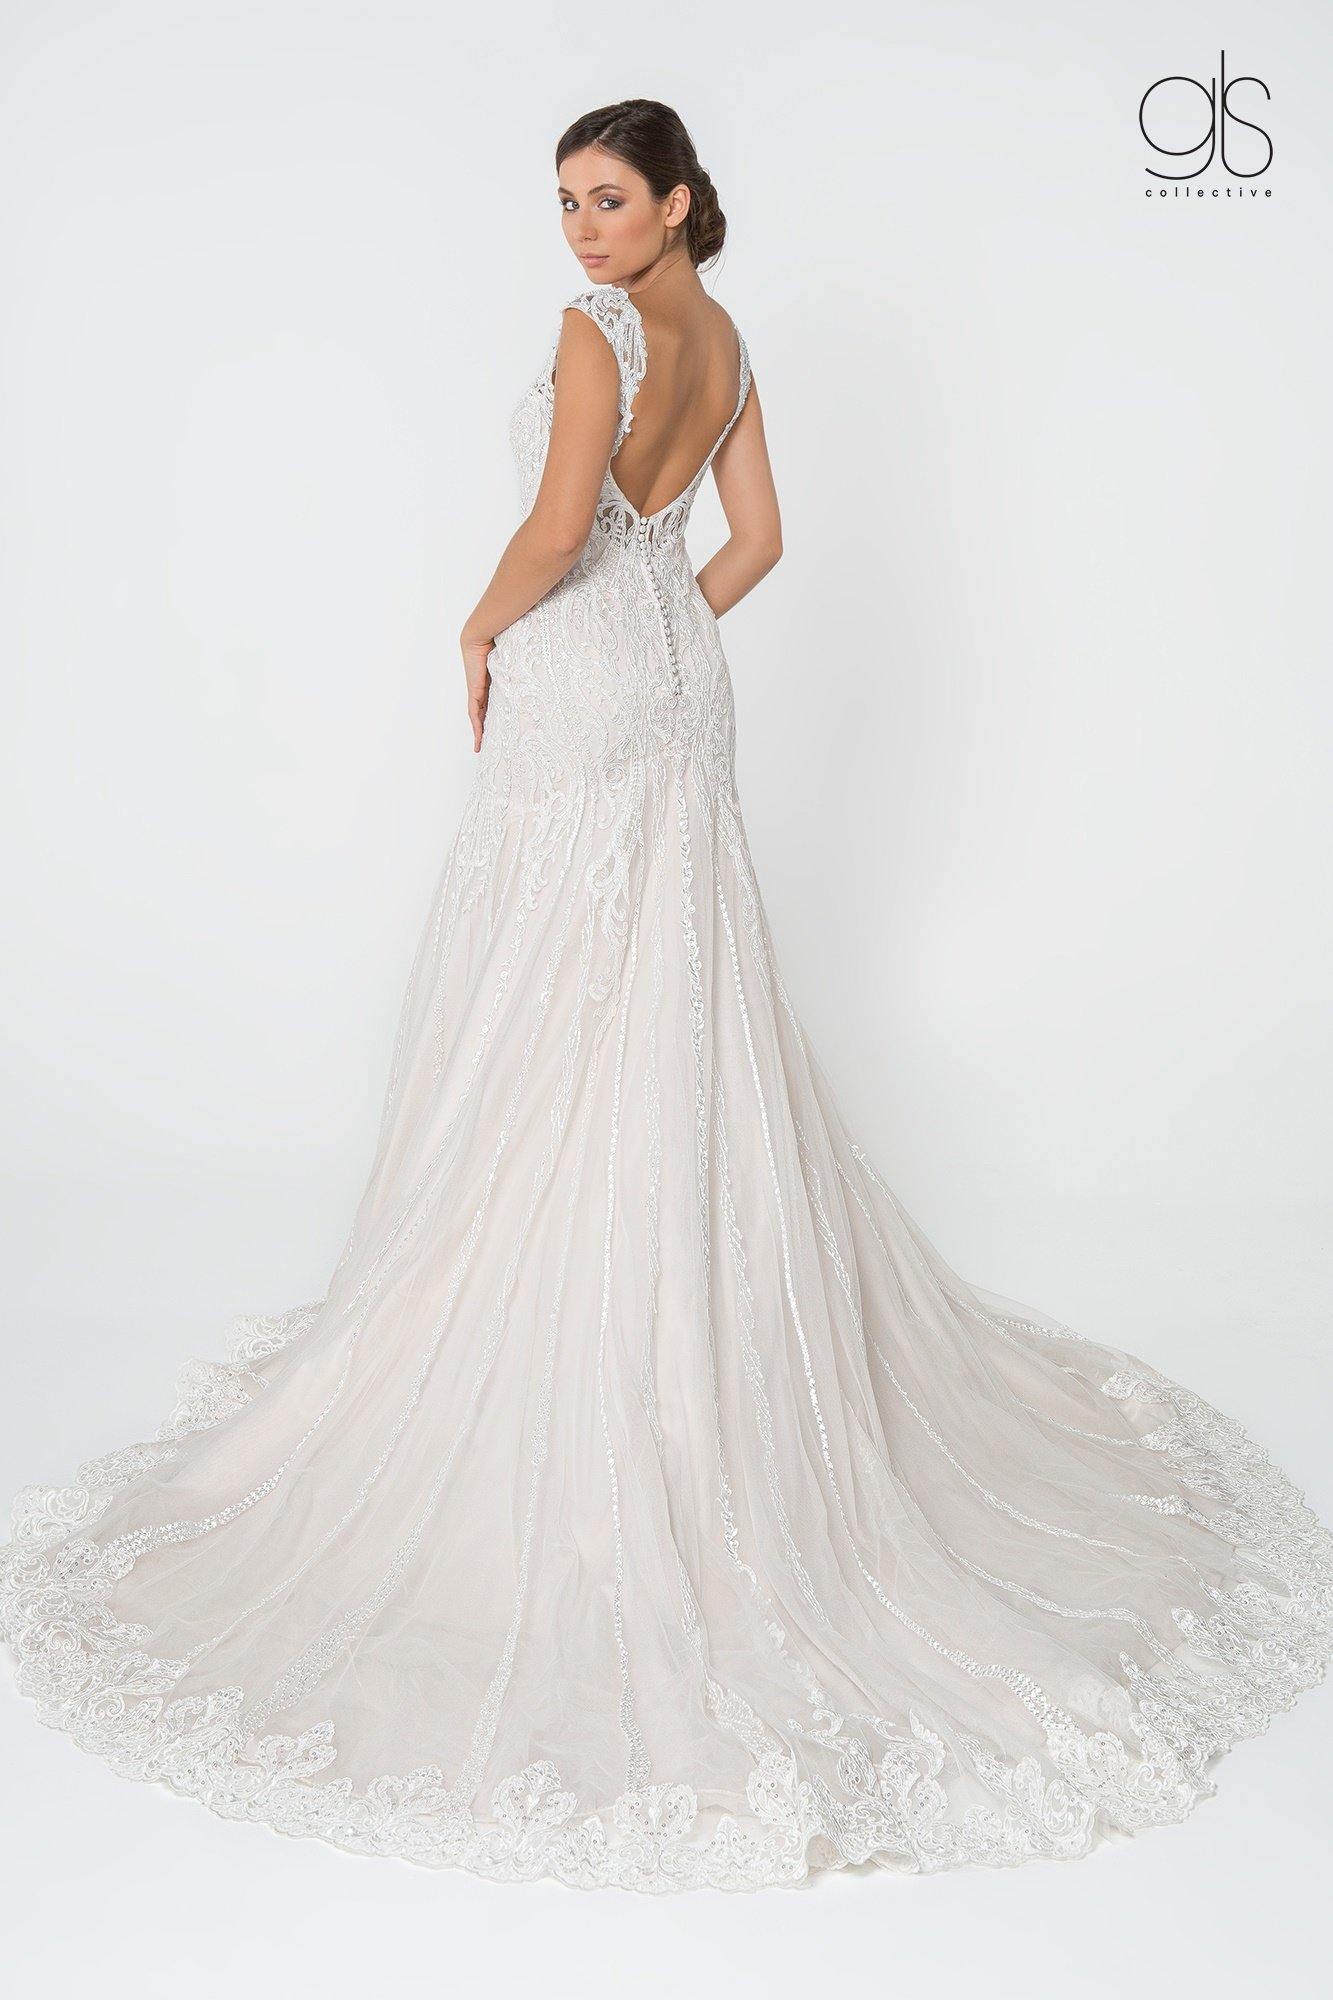 Bridal Long Gown Lace Embellished V-Neck Wedding Dress - The Dress Outlet Elizabeth K